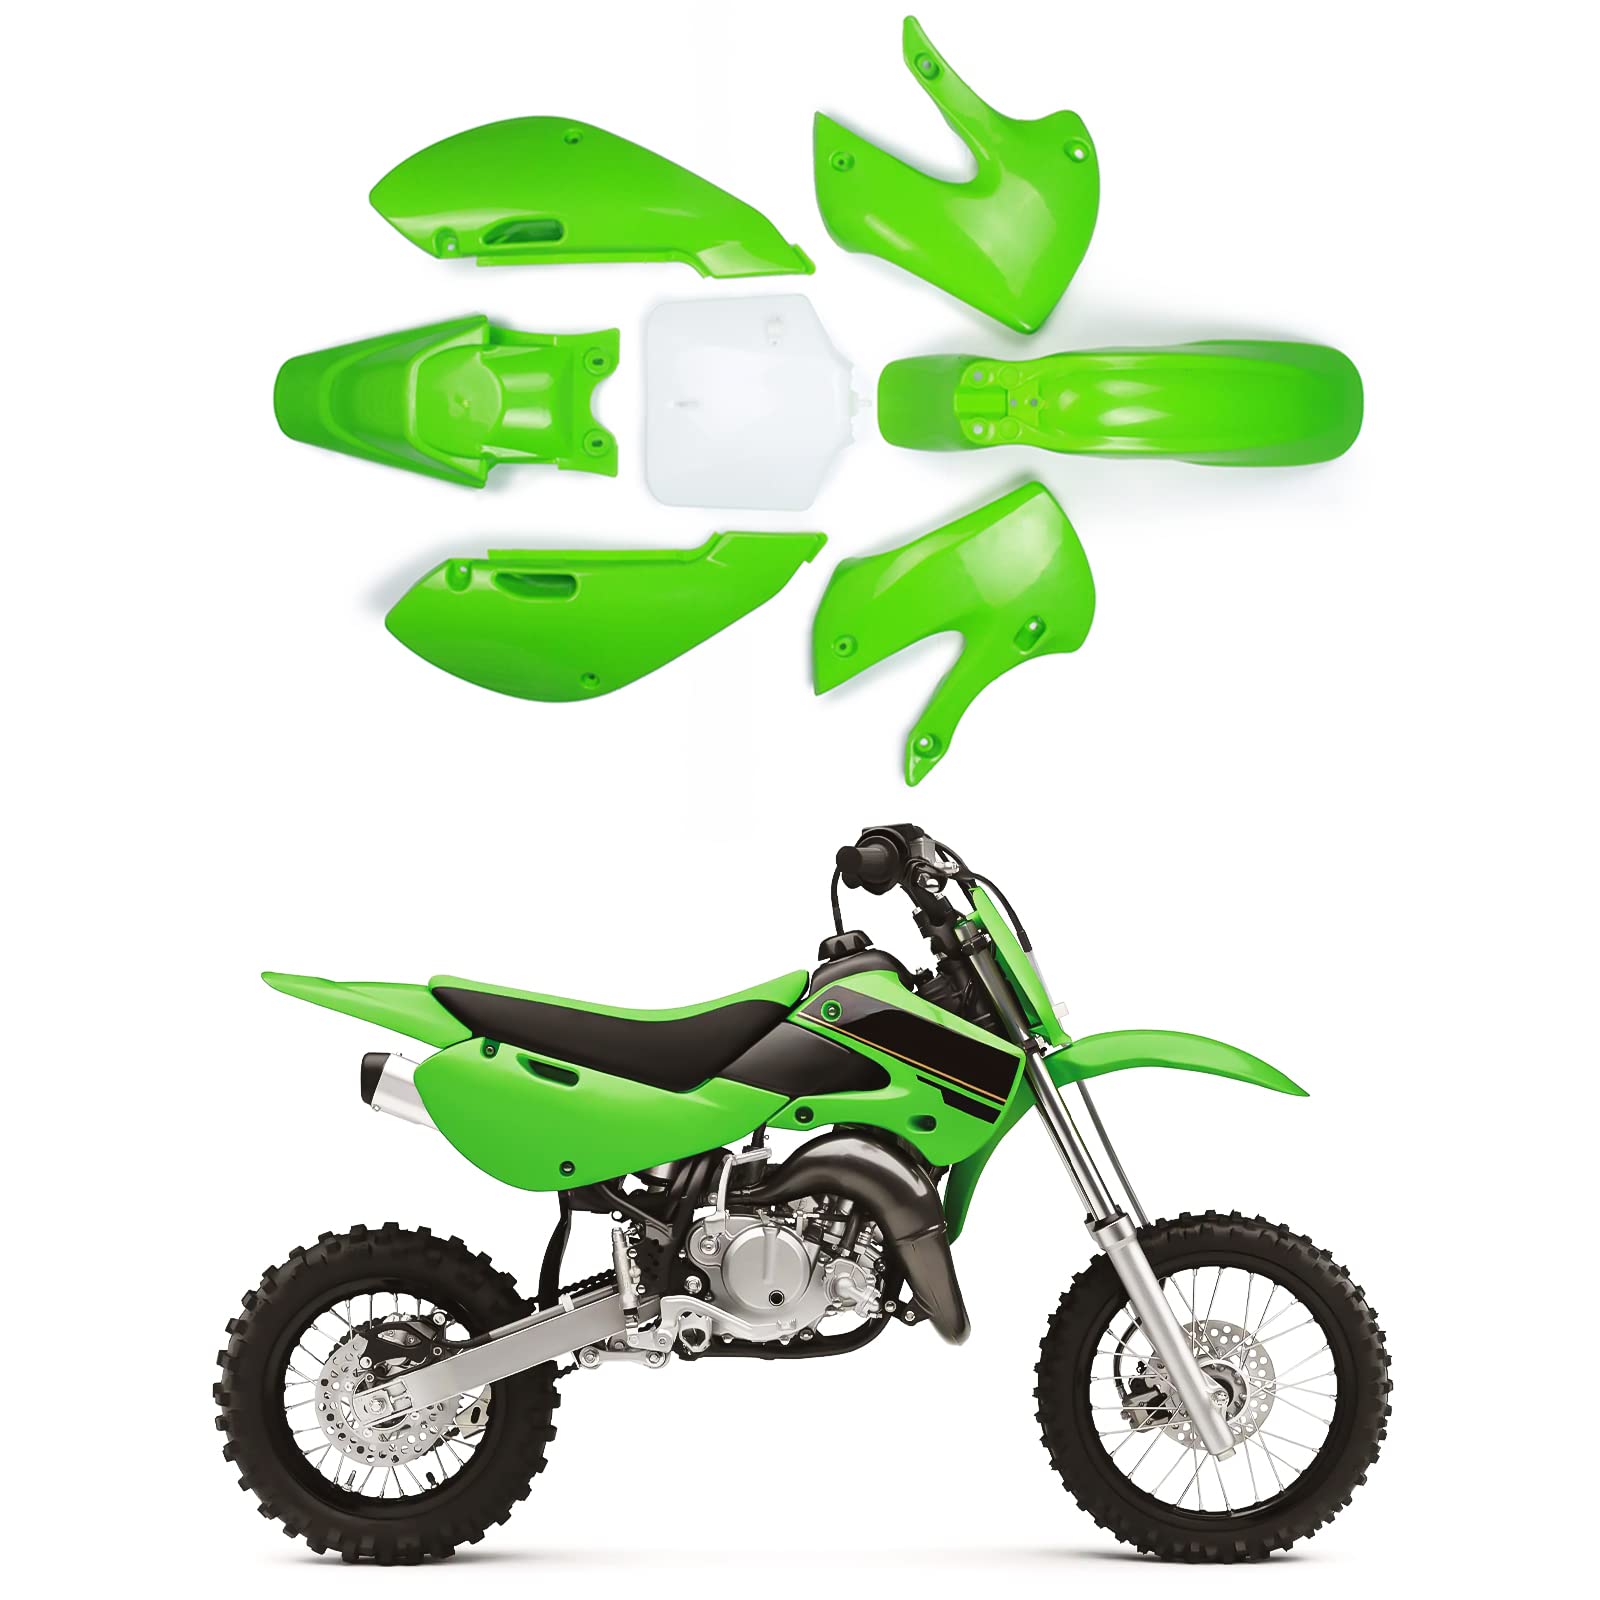 AnXin Motorrad ABS-Kunststoff Kotflügel Kit Karosserie Arbeitsverkleidung Kit für KLX110 2002–2013 KX-65 2000–2013 DRZ-110 2003–2005 Dirt Pit Bike (Grün und Weiß)